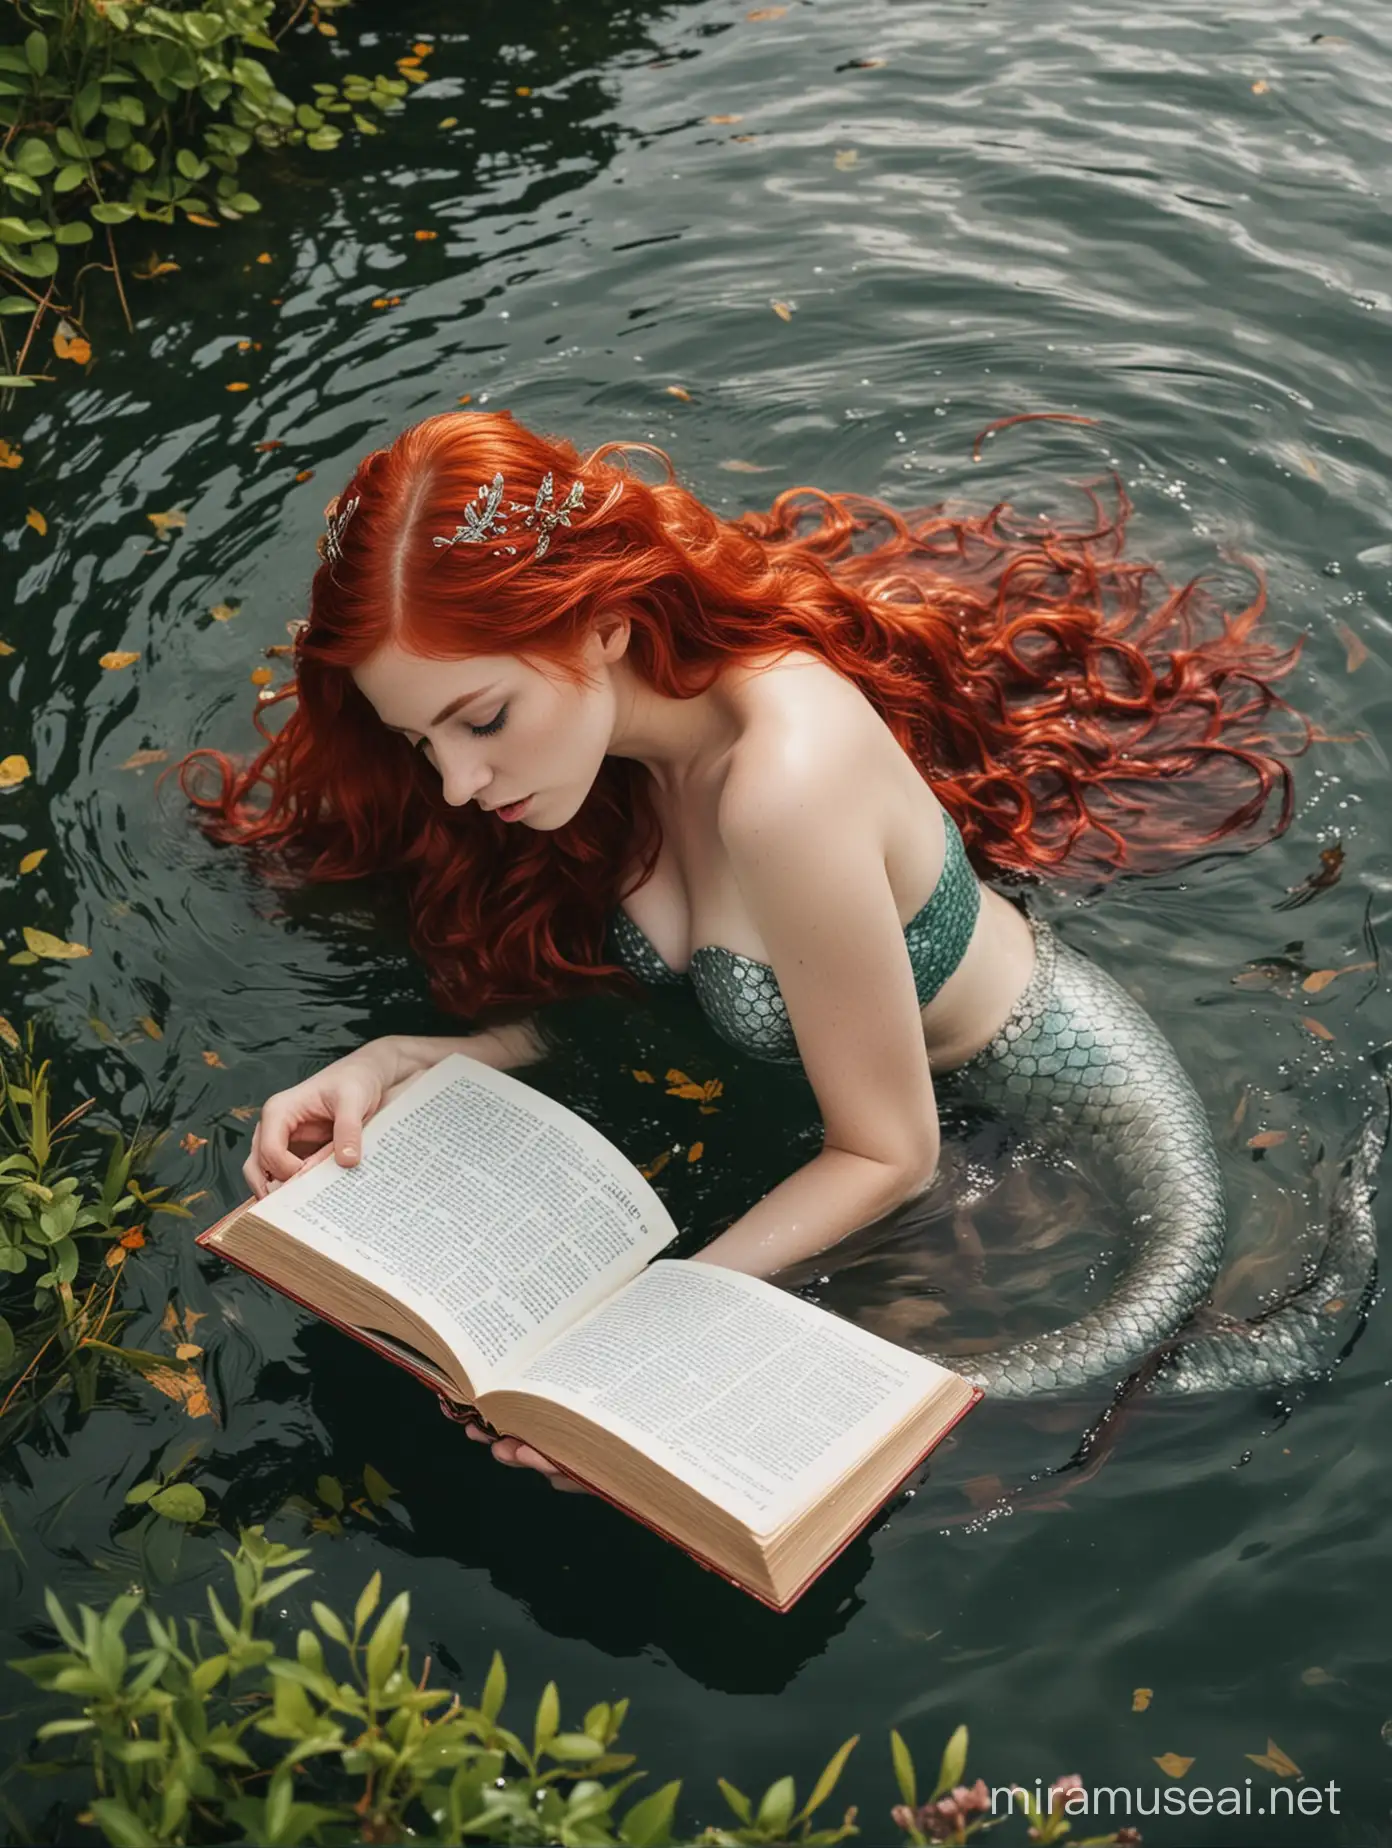 Sirena con i capelli rossi immersa nella natura scrive su un libro una poesia 
Dal libro fuoriescono parole 